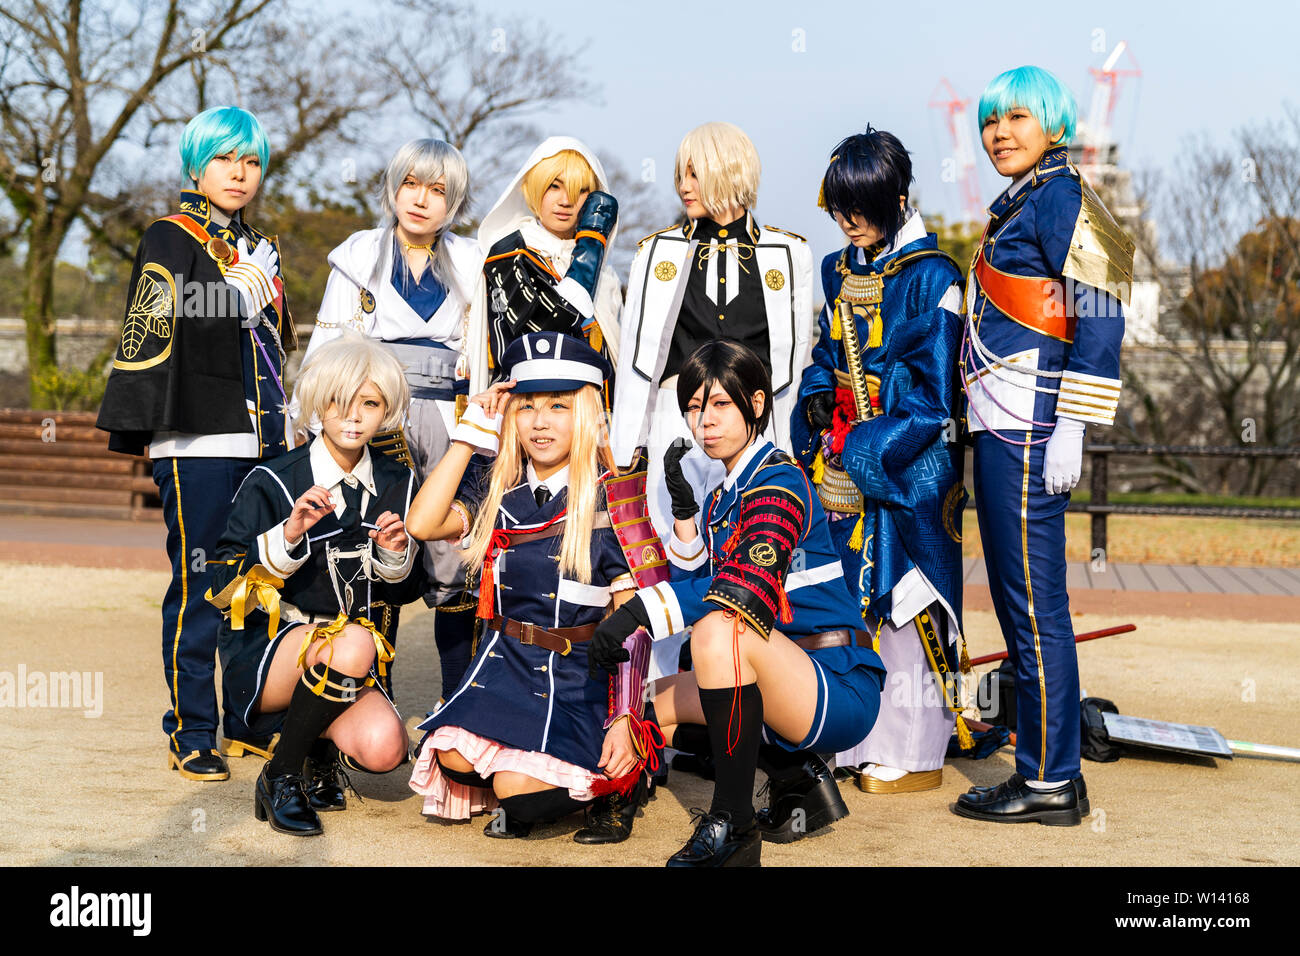 Cos giapponese Riproduci evento presso il Castello di Kumamoto Park. Gruppo di costume donna giocatori in Science Fiction tipo uniformi si sono riuniti per una foto di gruppo. Foto Stock